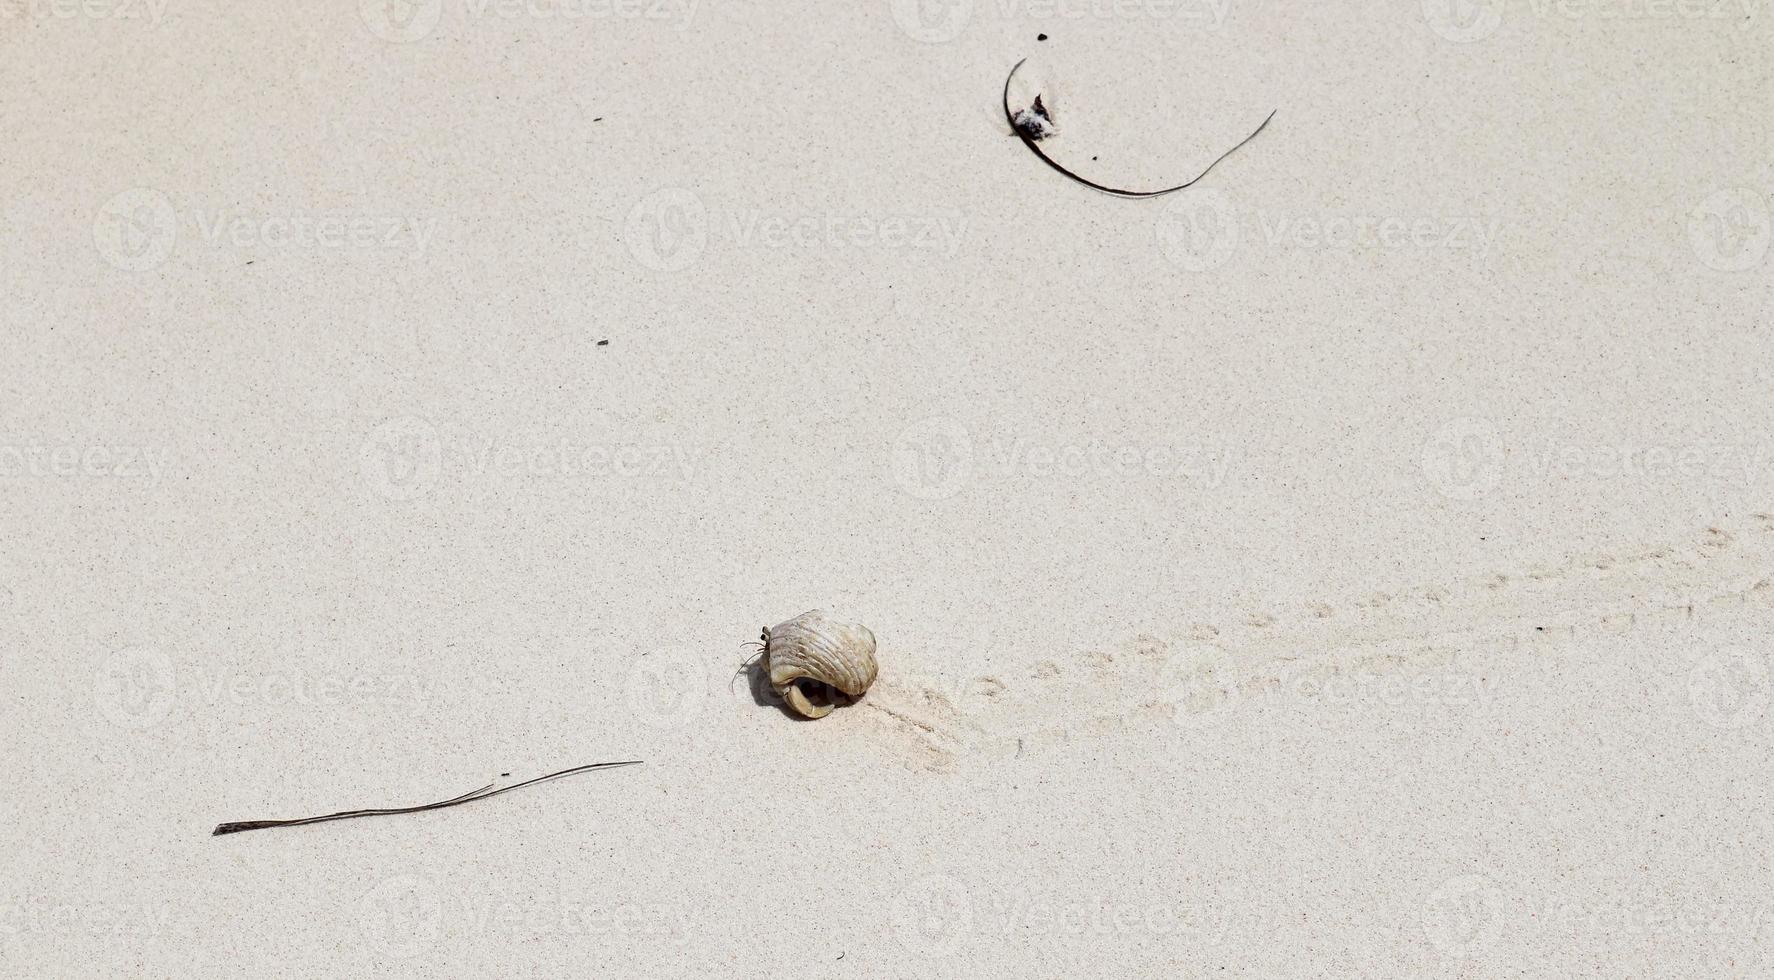 belas fotos da areia branca da praia na ilha paradisíaca de seychelles com pegadas